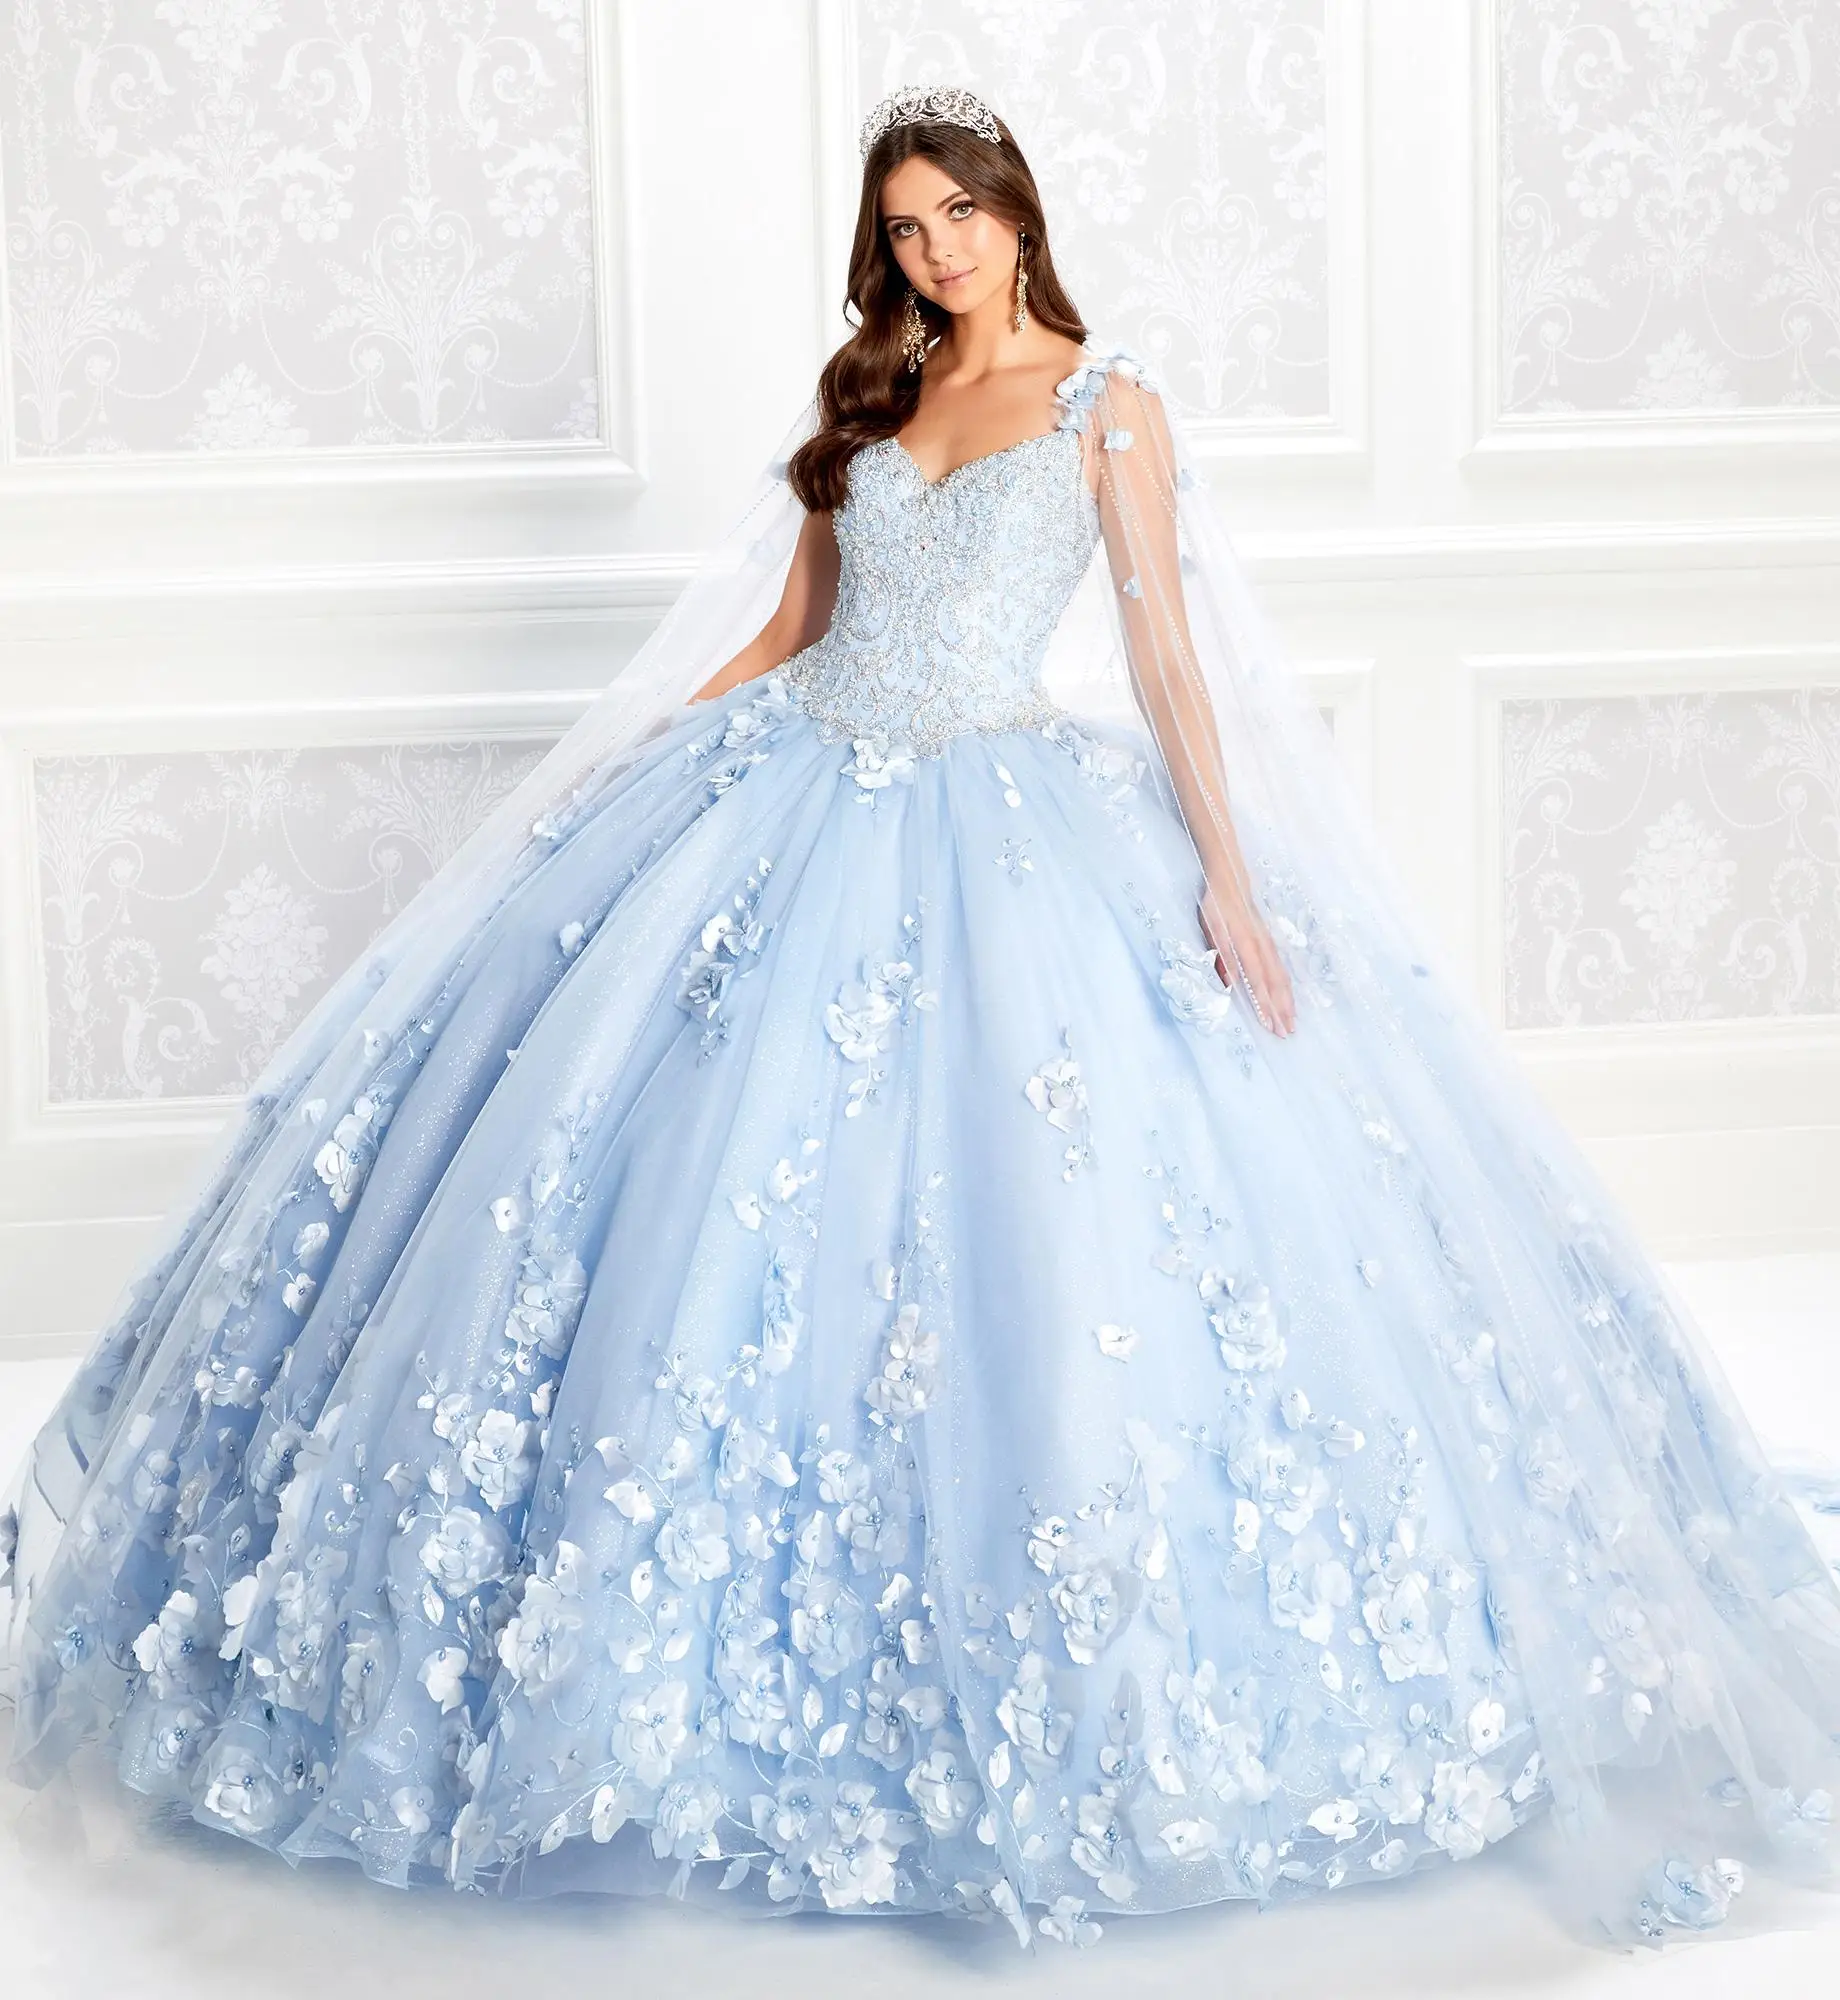 

Бальное платье небесно-голубого цвета, платья с бисером, лиф-корсет, кружевное платье для выпускного вечера с цветочной аппликацией и запах...